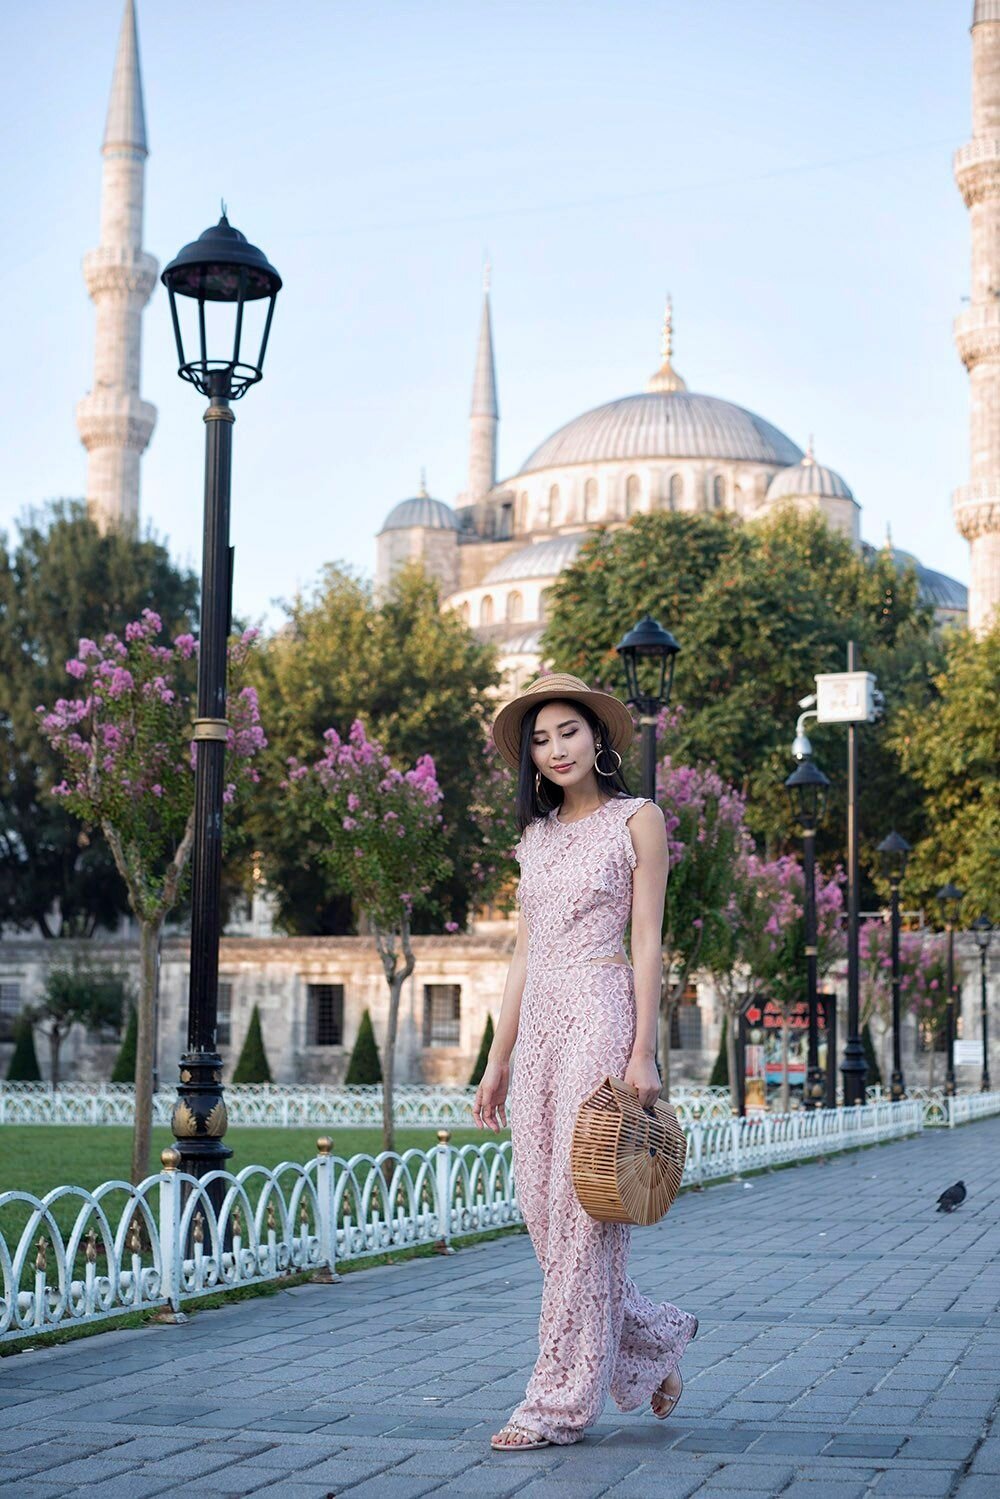 10 Most Instagrammable Spots in Istanbul, Turkey